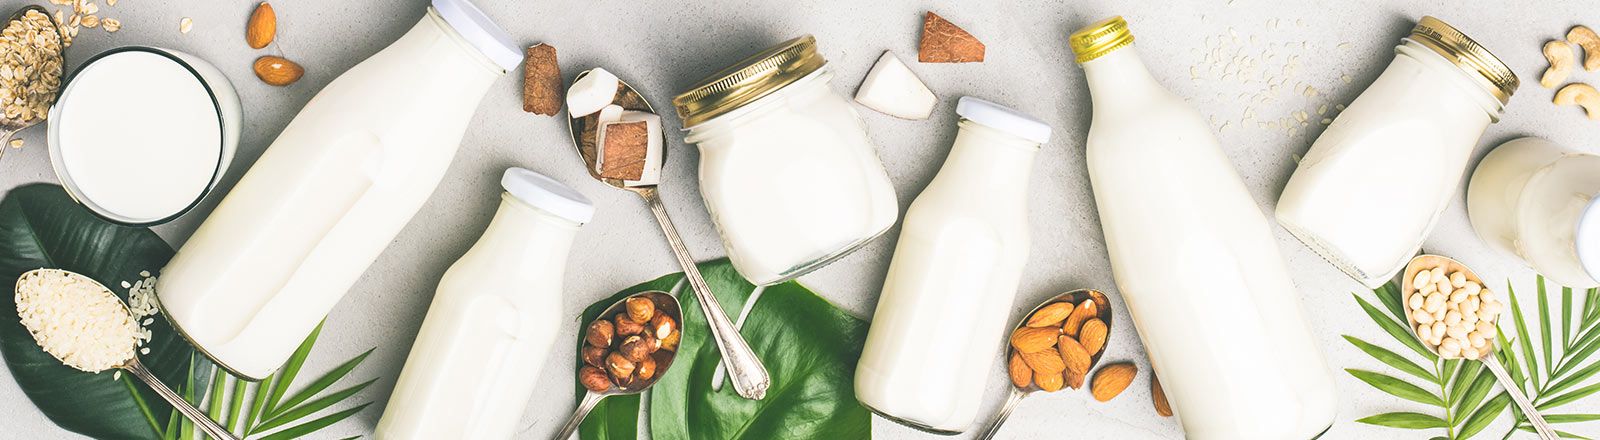 Milchalternativen für Laktoseintoleranz und Veganer